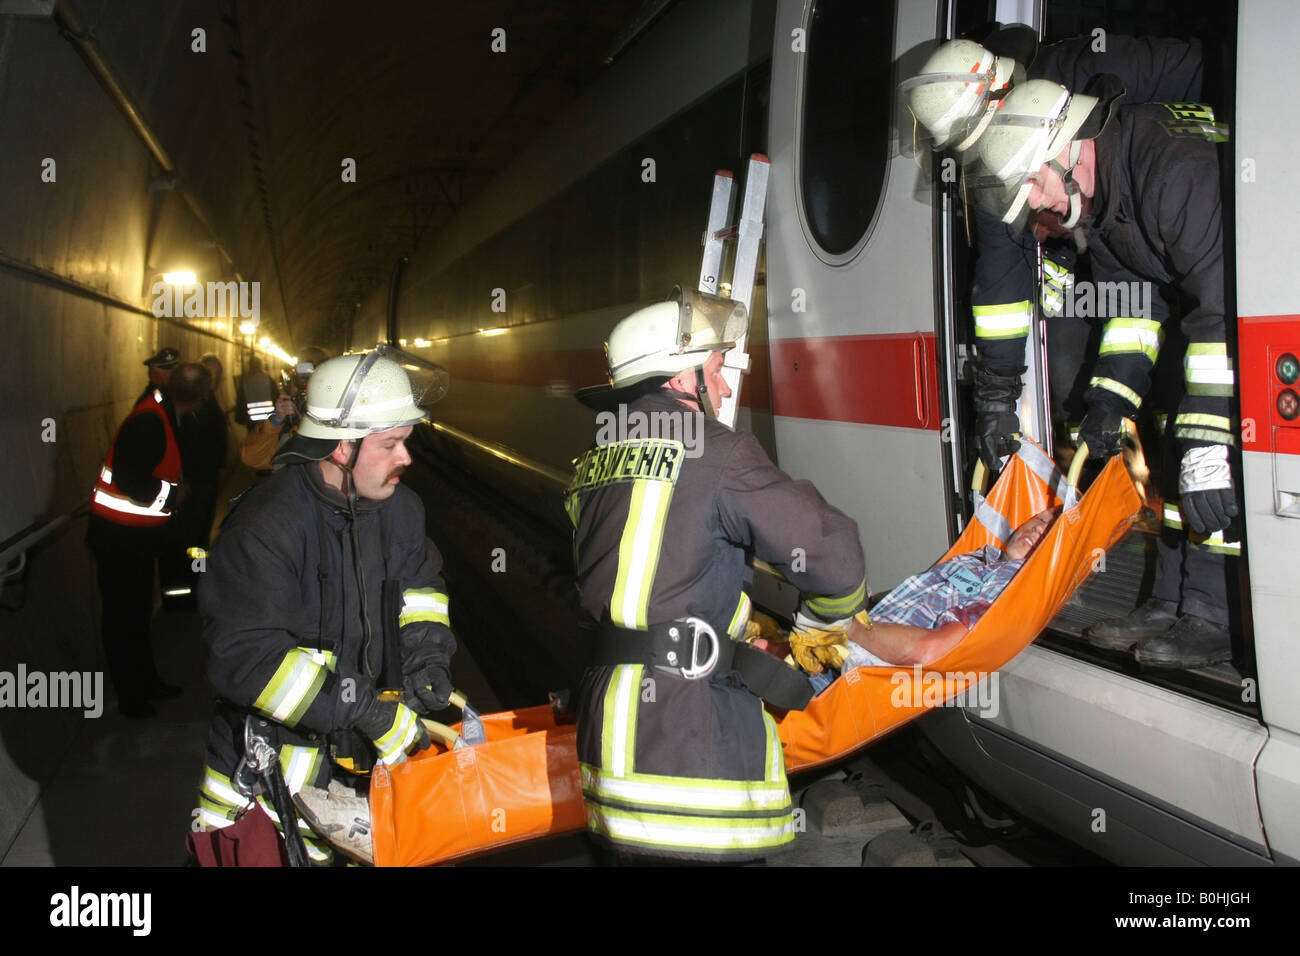 Les pompiers le déplacement d'une civière, percez de sauvetage menées dans une glace à grande vitesse ou bullet train tunnel, Allemagne Banque D'Images